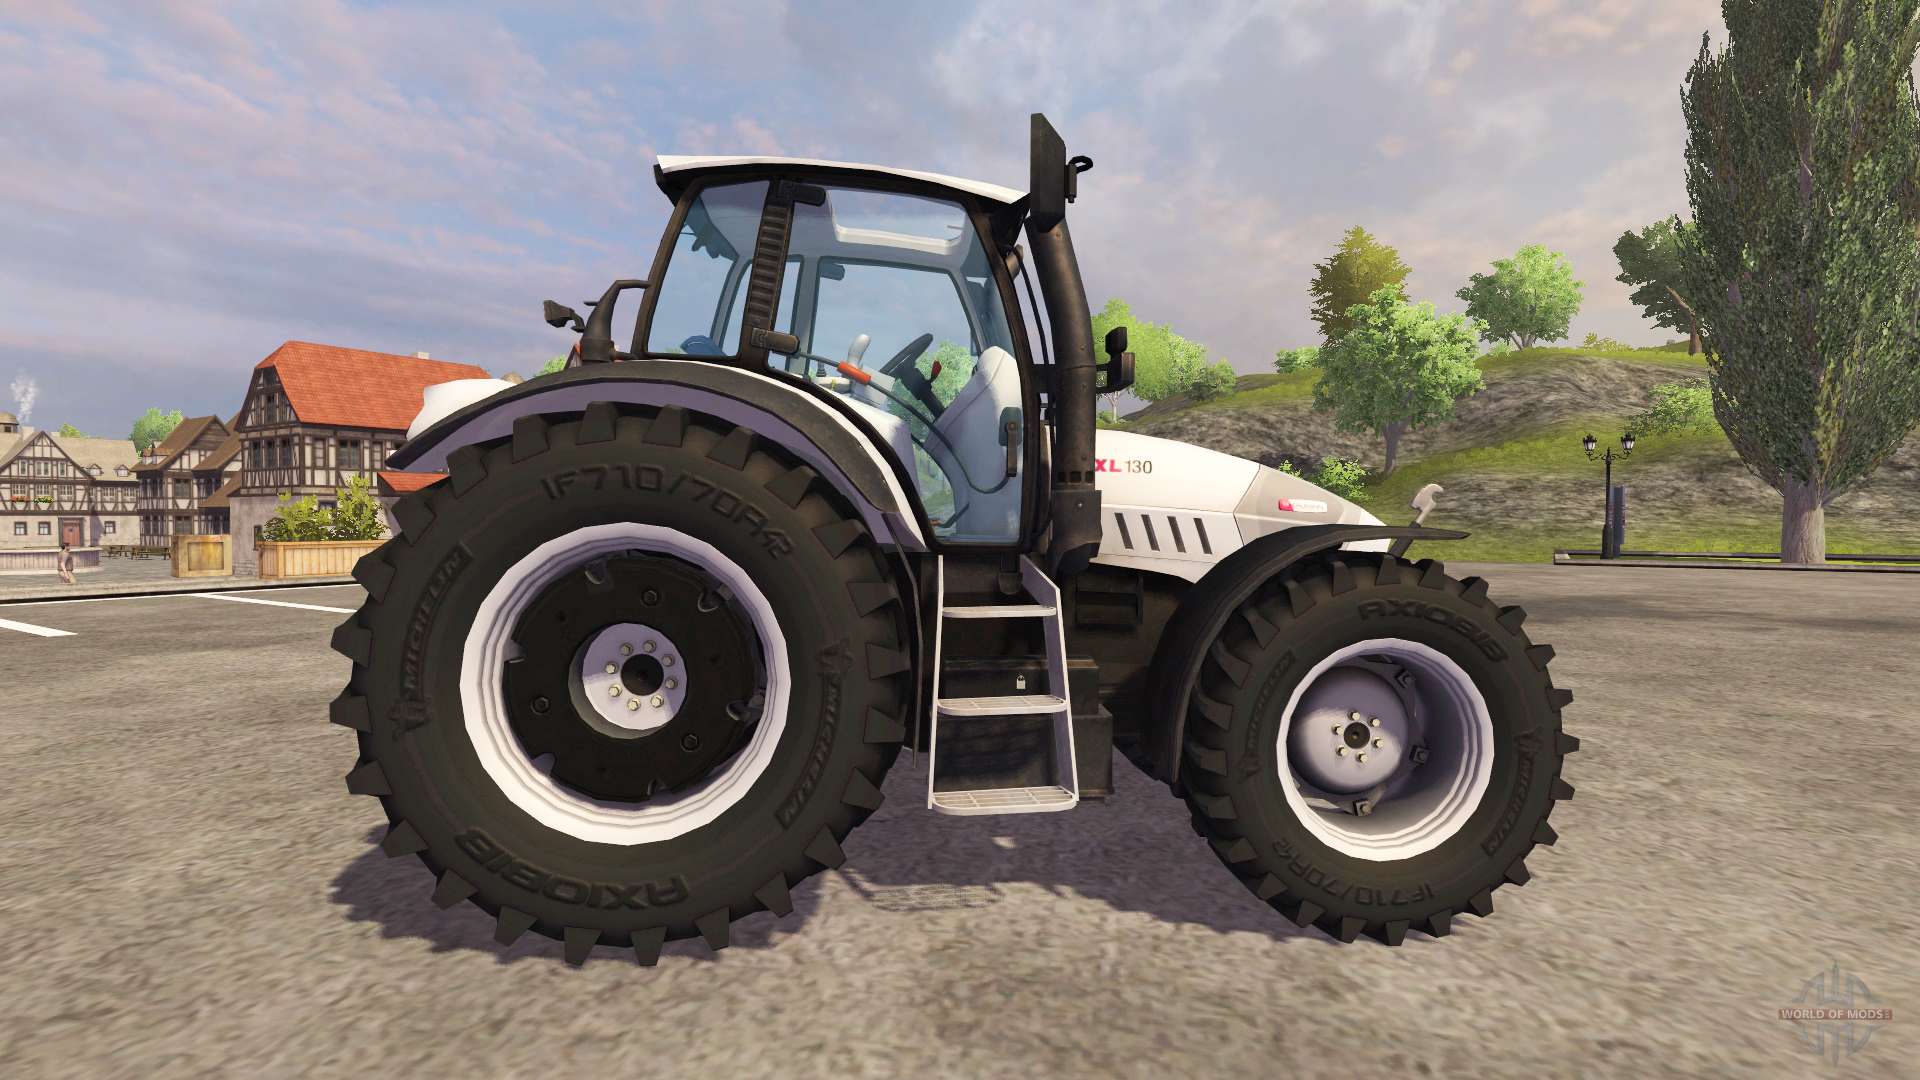 Hurlimann XL 130 v2.0 für Farming Simulator 2013